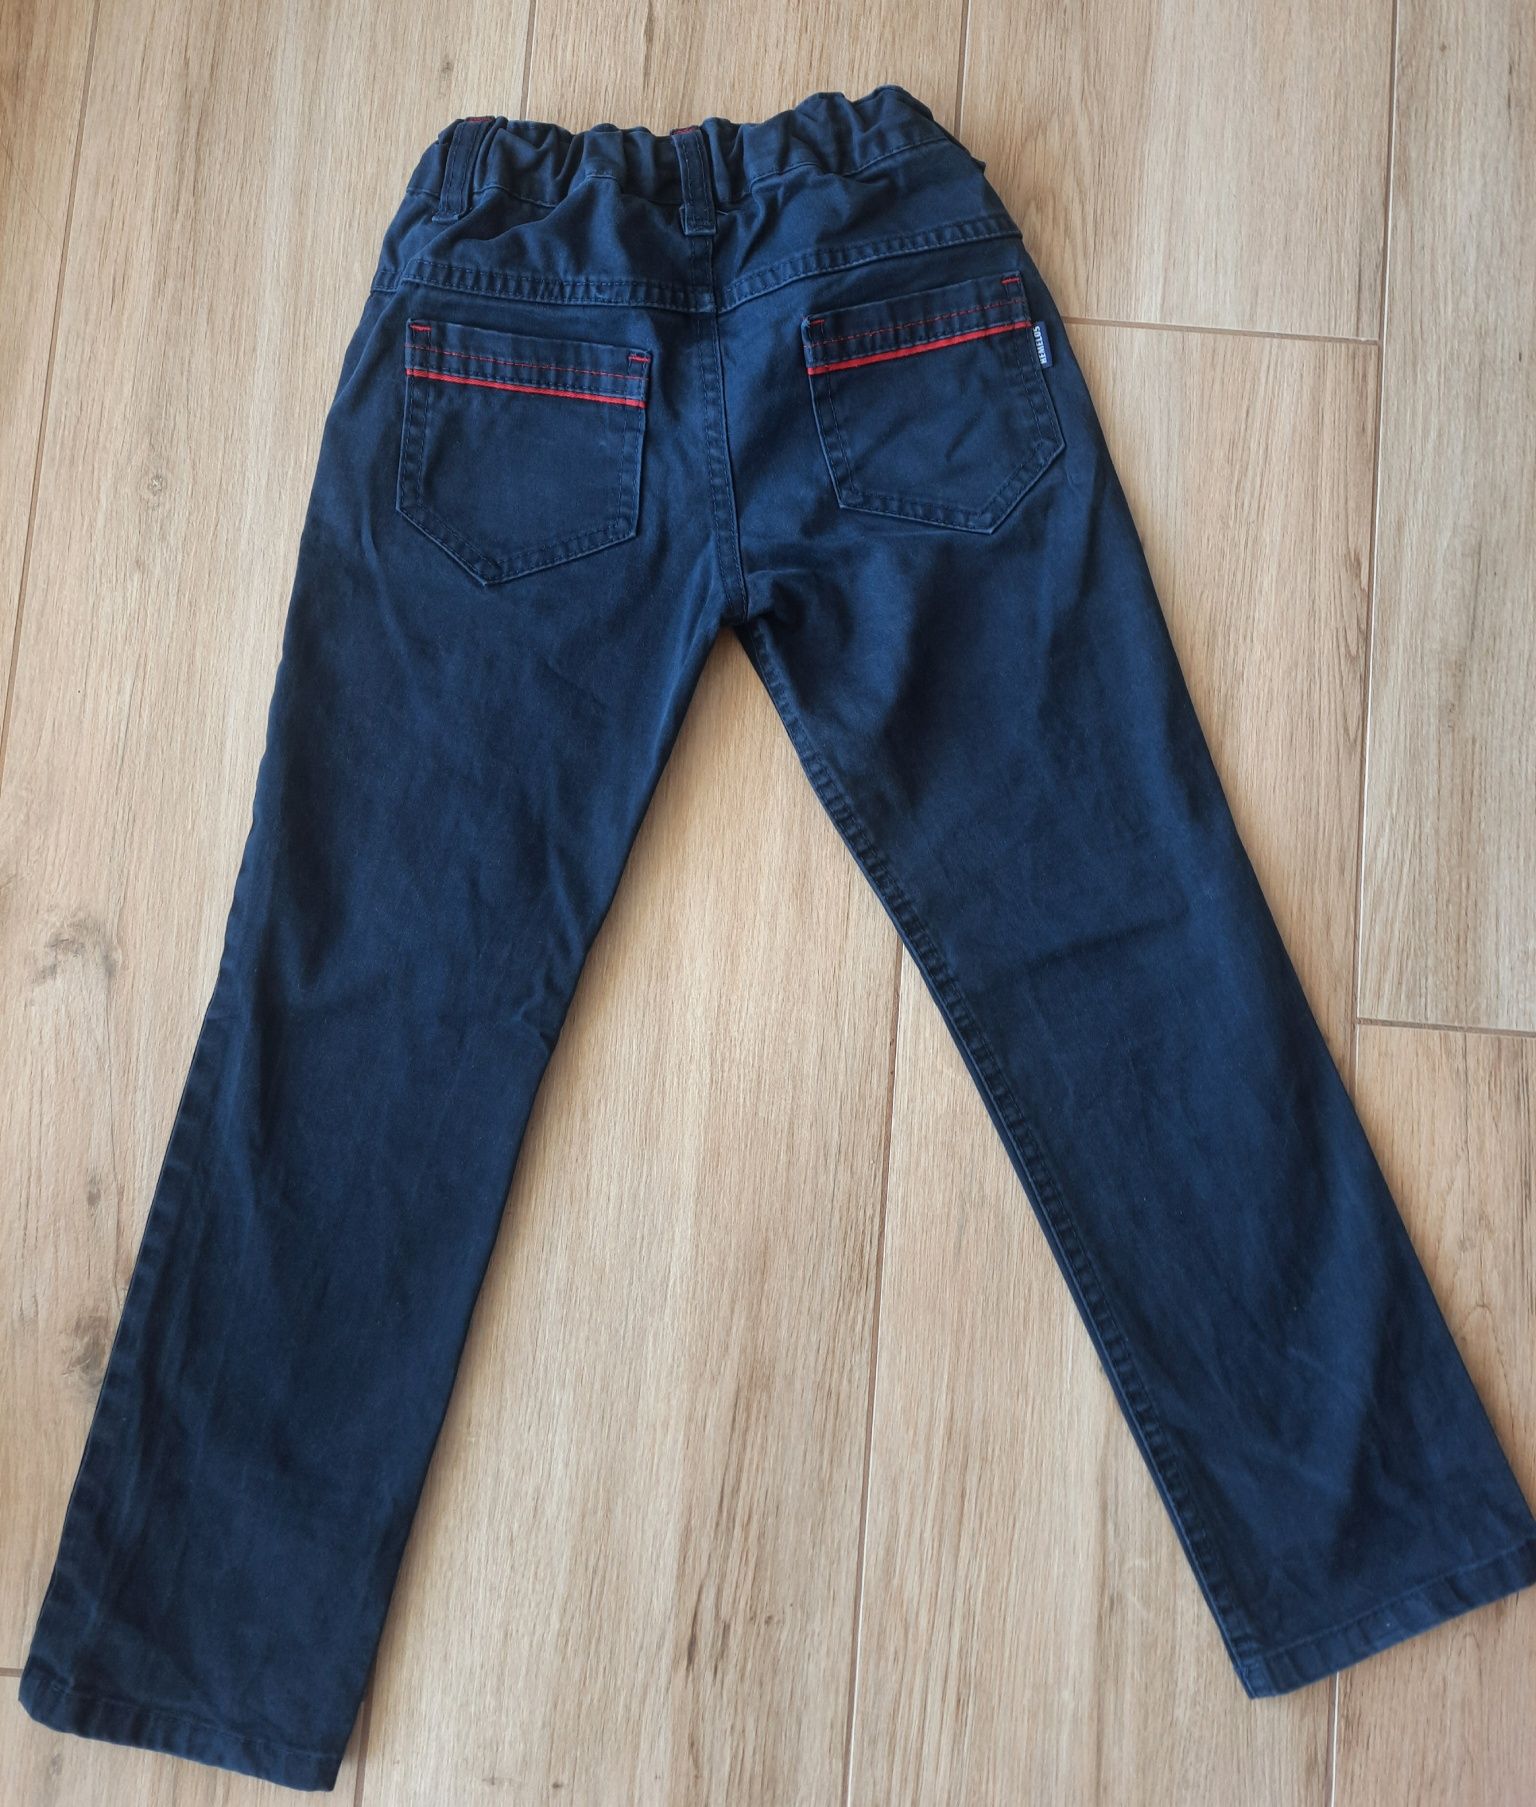 Granatowe spodnie jeans rozmiar 122.